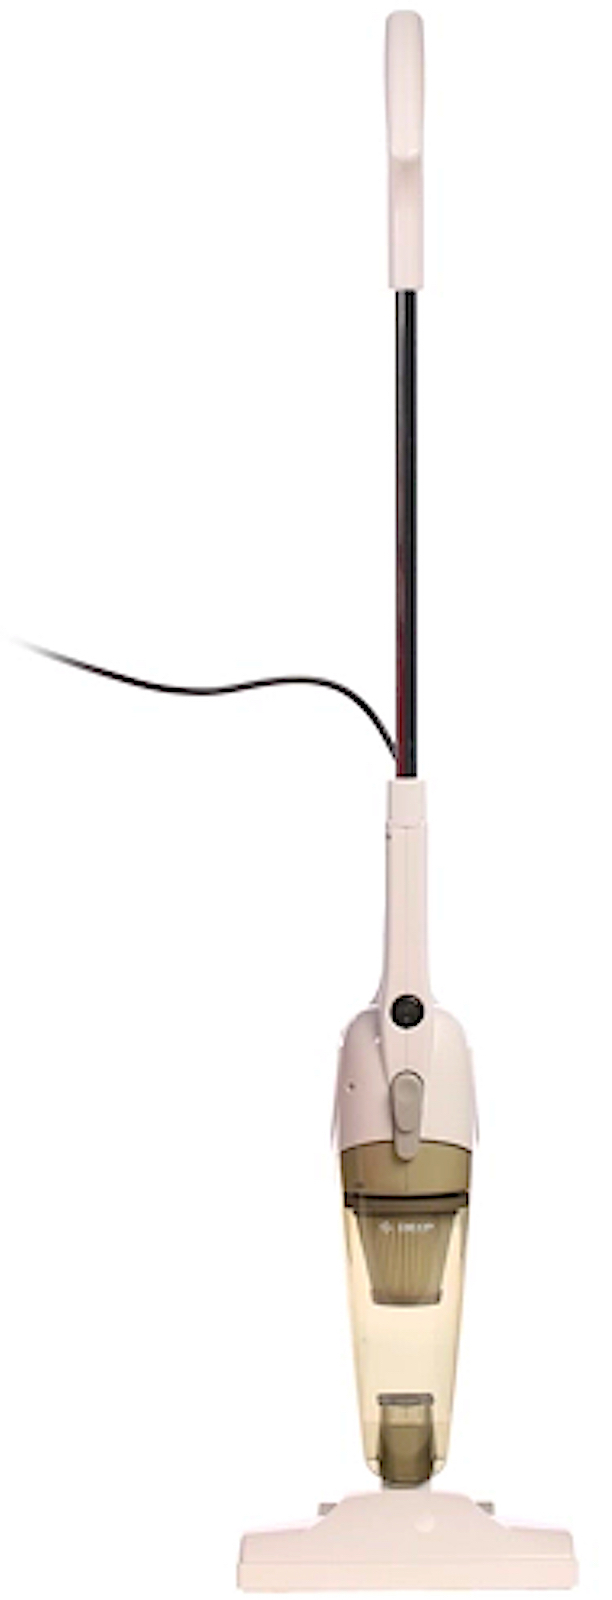 Вертикальный пылесос dexp m. Пылесос DEXP M-800v белый. Пылесос дексп вертикальный. Пылесос дексп m800 v. Вертикальный пылесос DEXP.